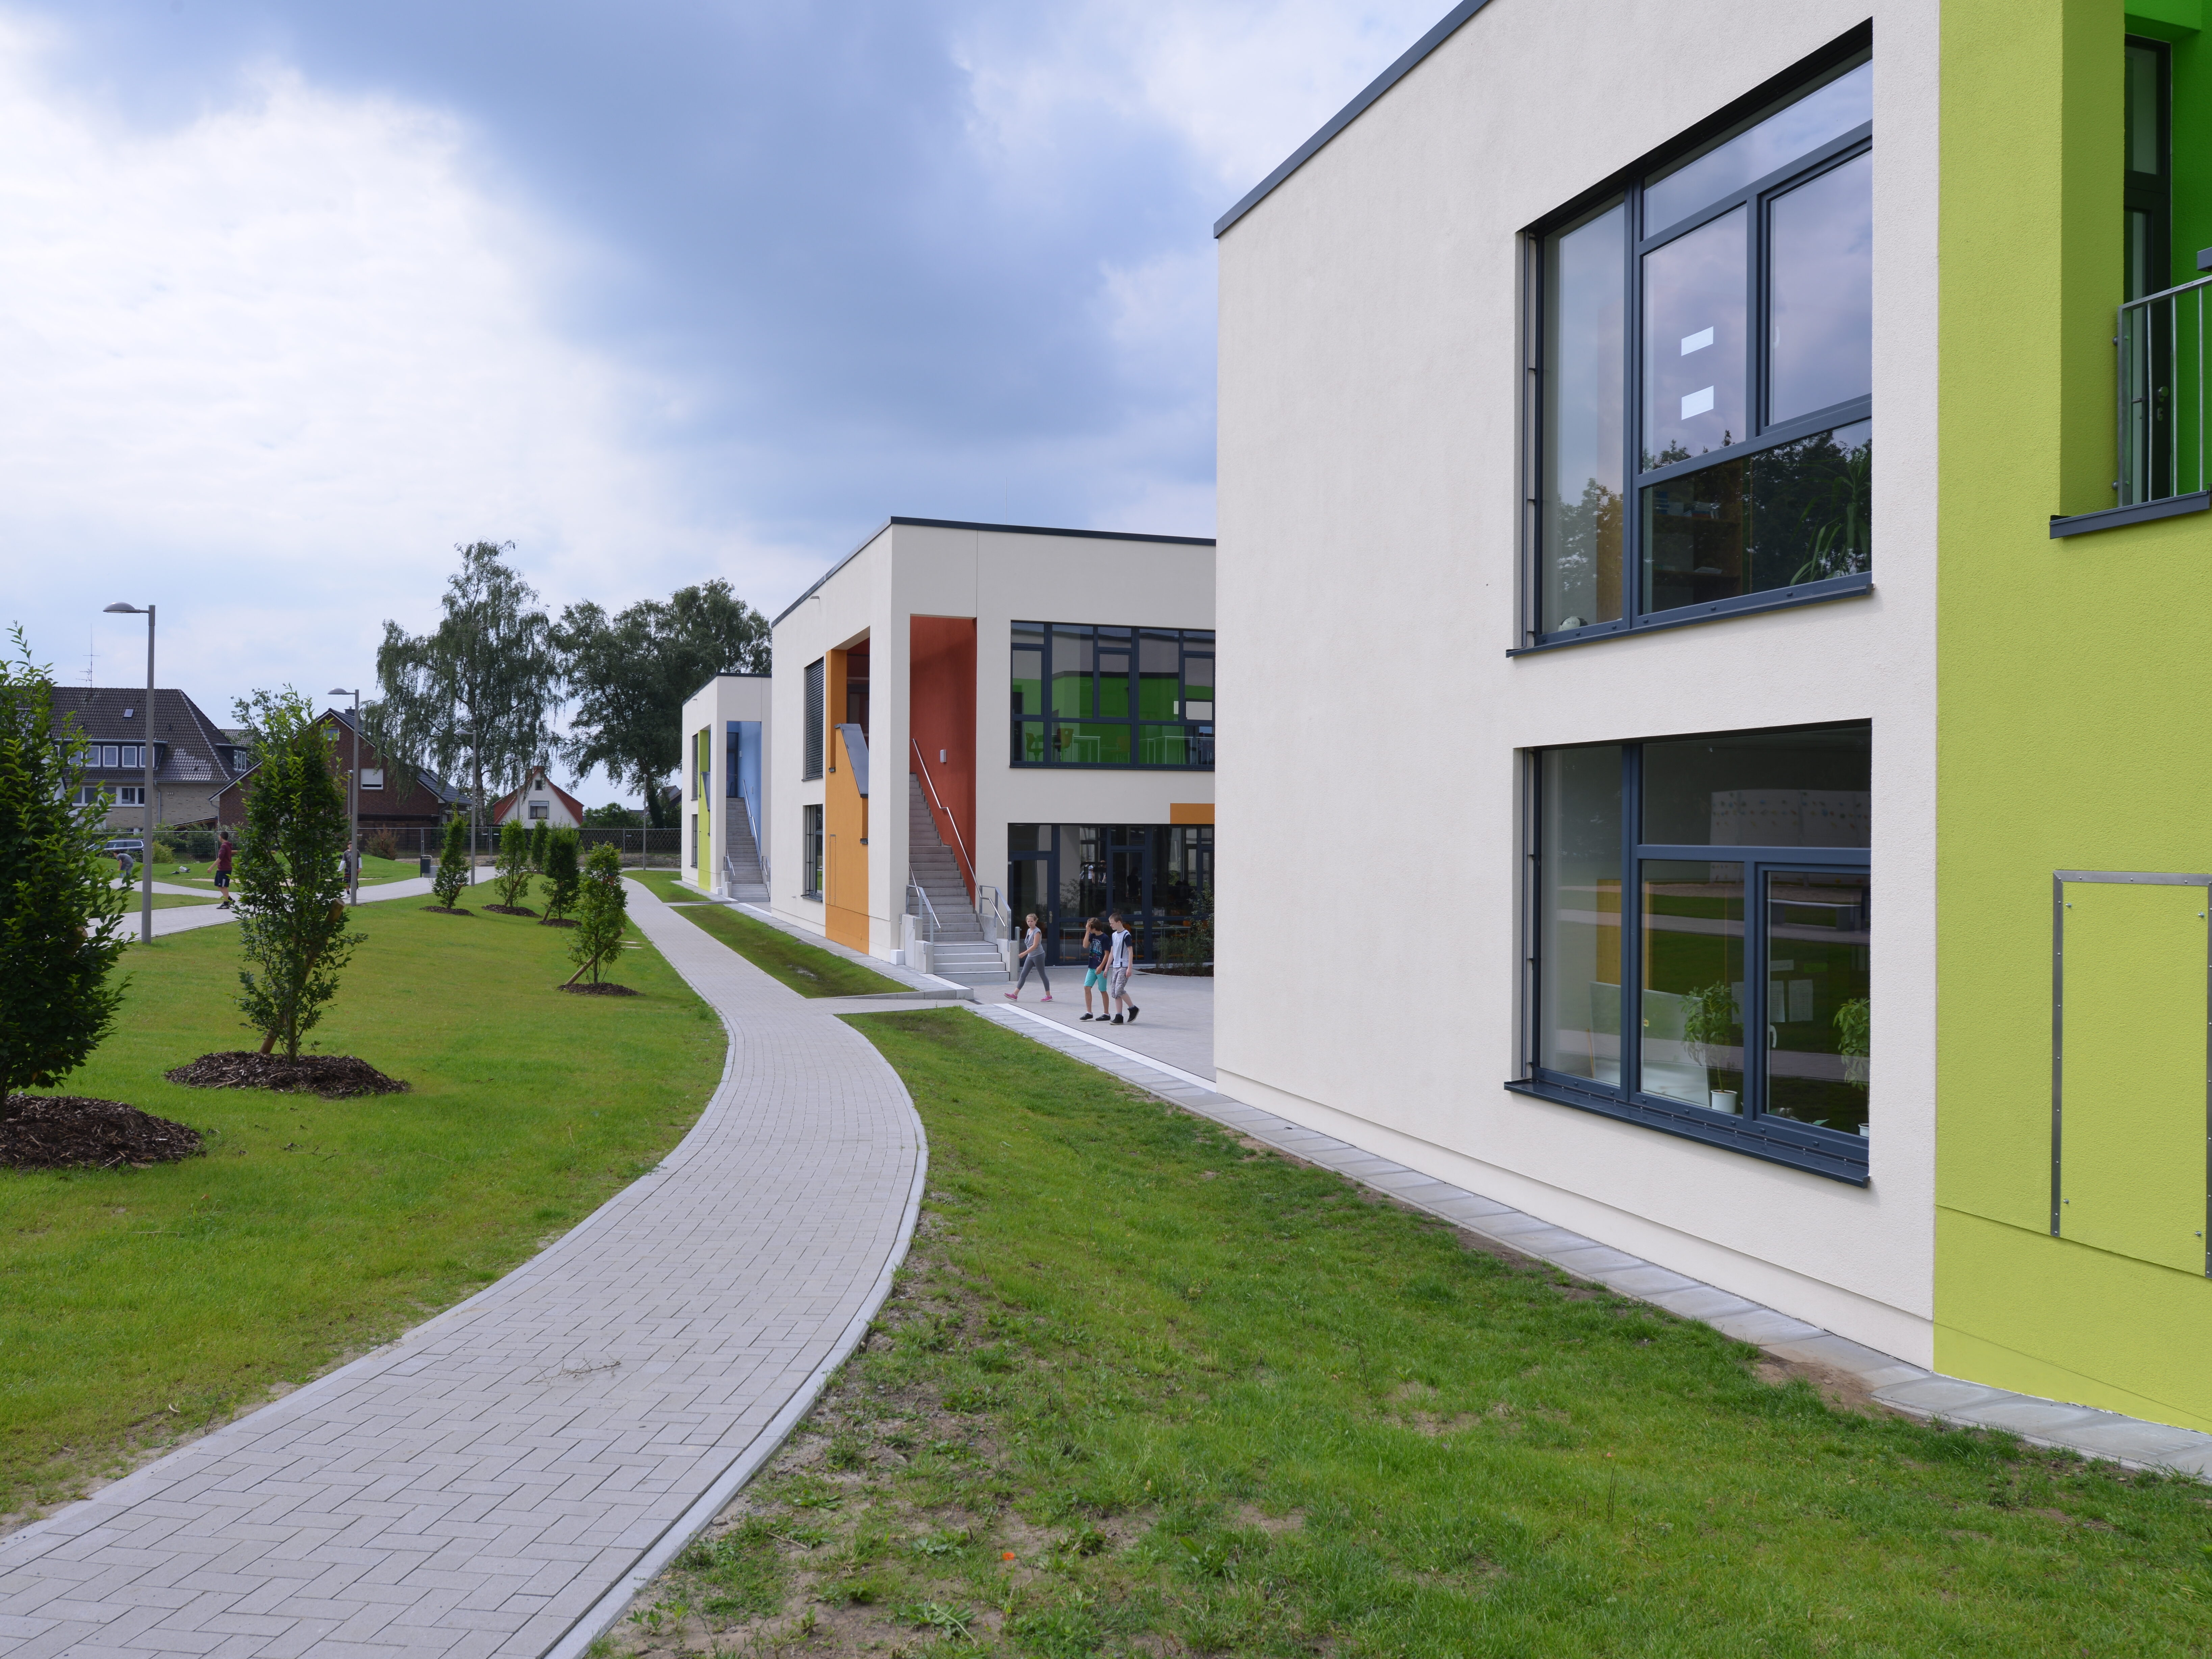 Außenansicht der Oberschule Lernhaus im Campus Osterholz-Scharmbeck